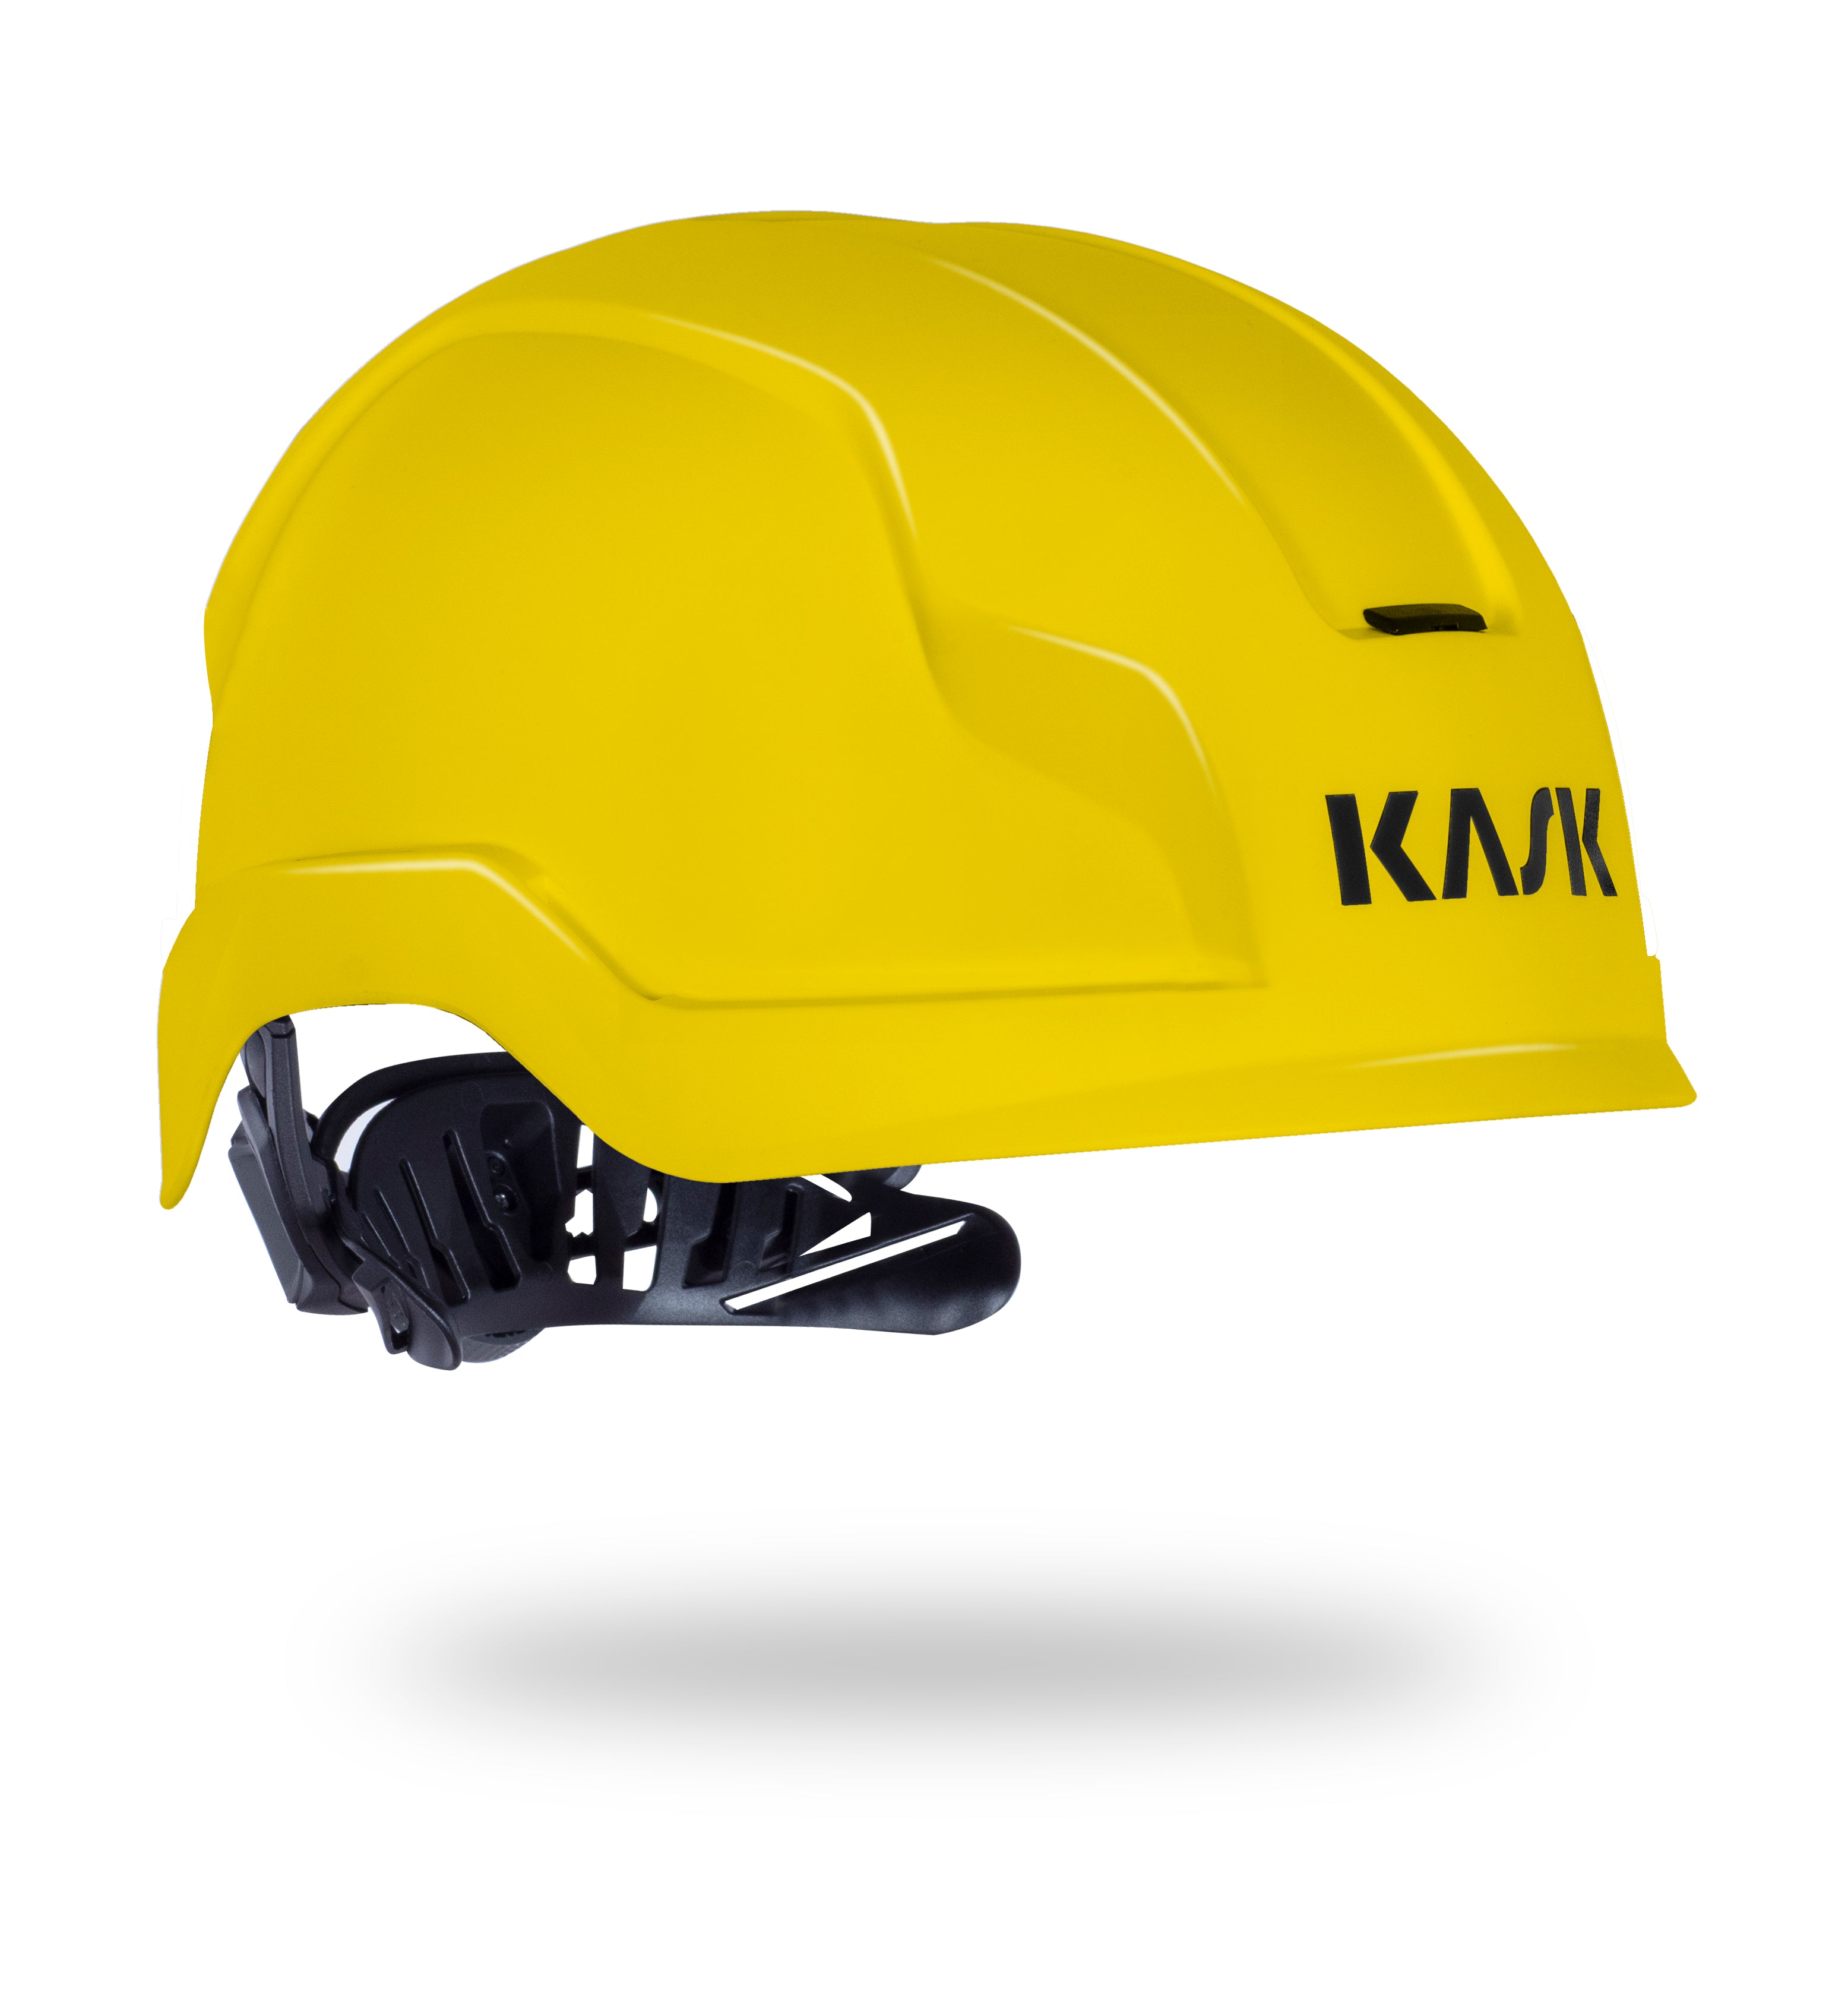 KASK Zenith X BA Helmet - EN397 EN50365